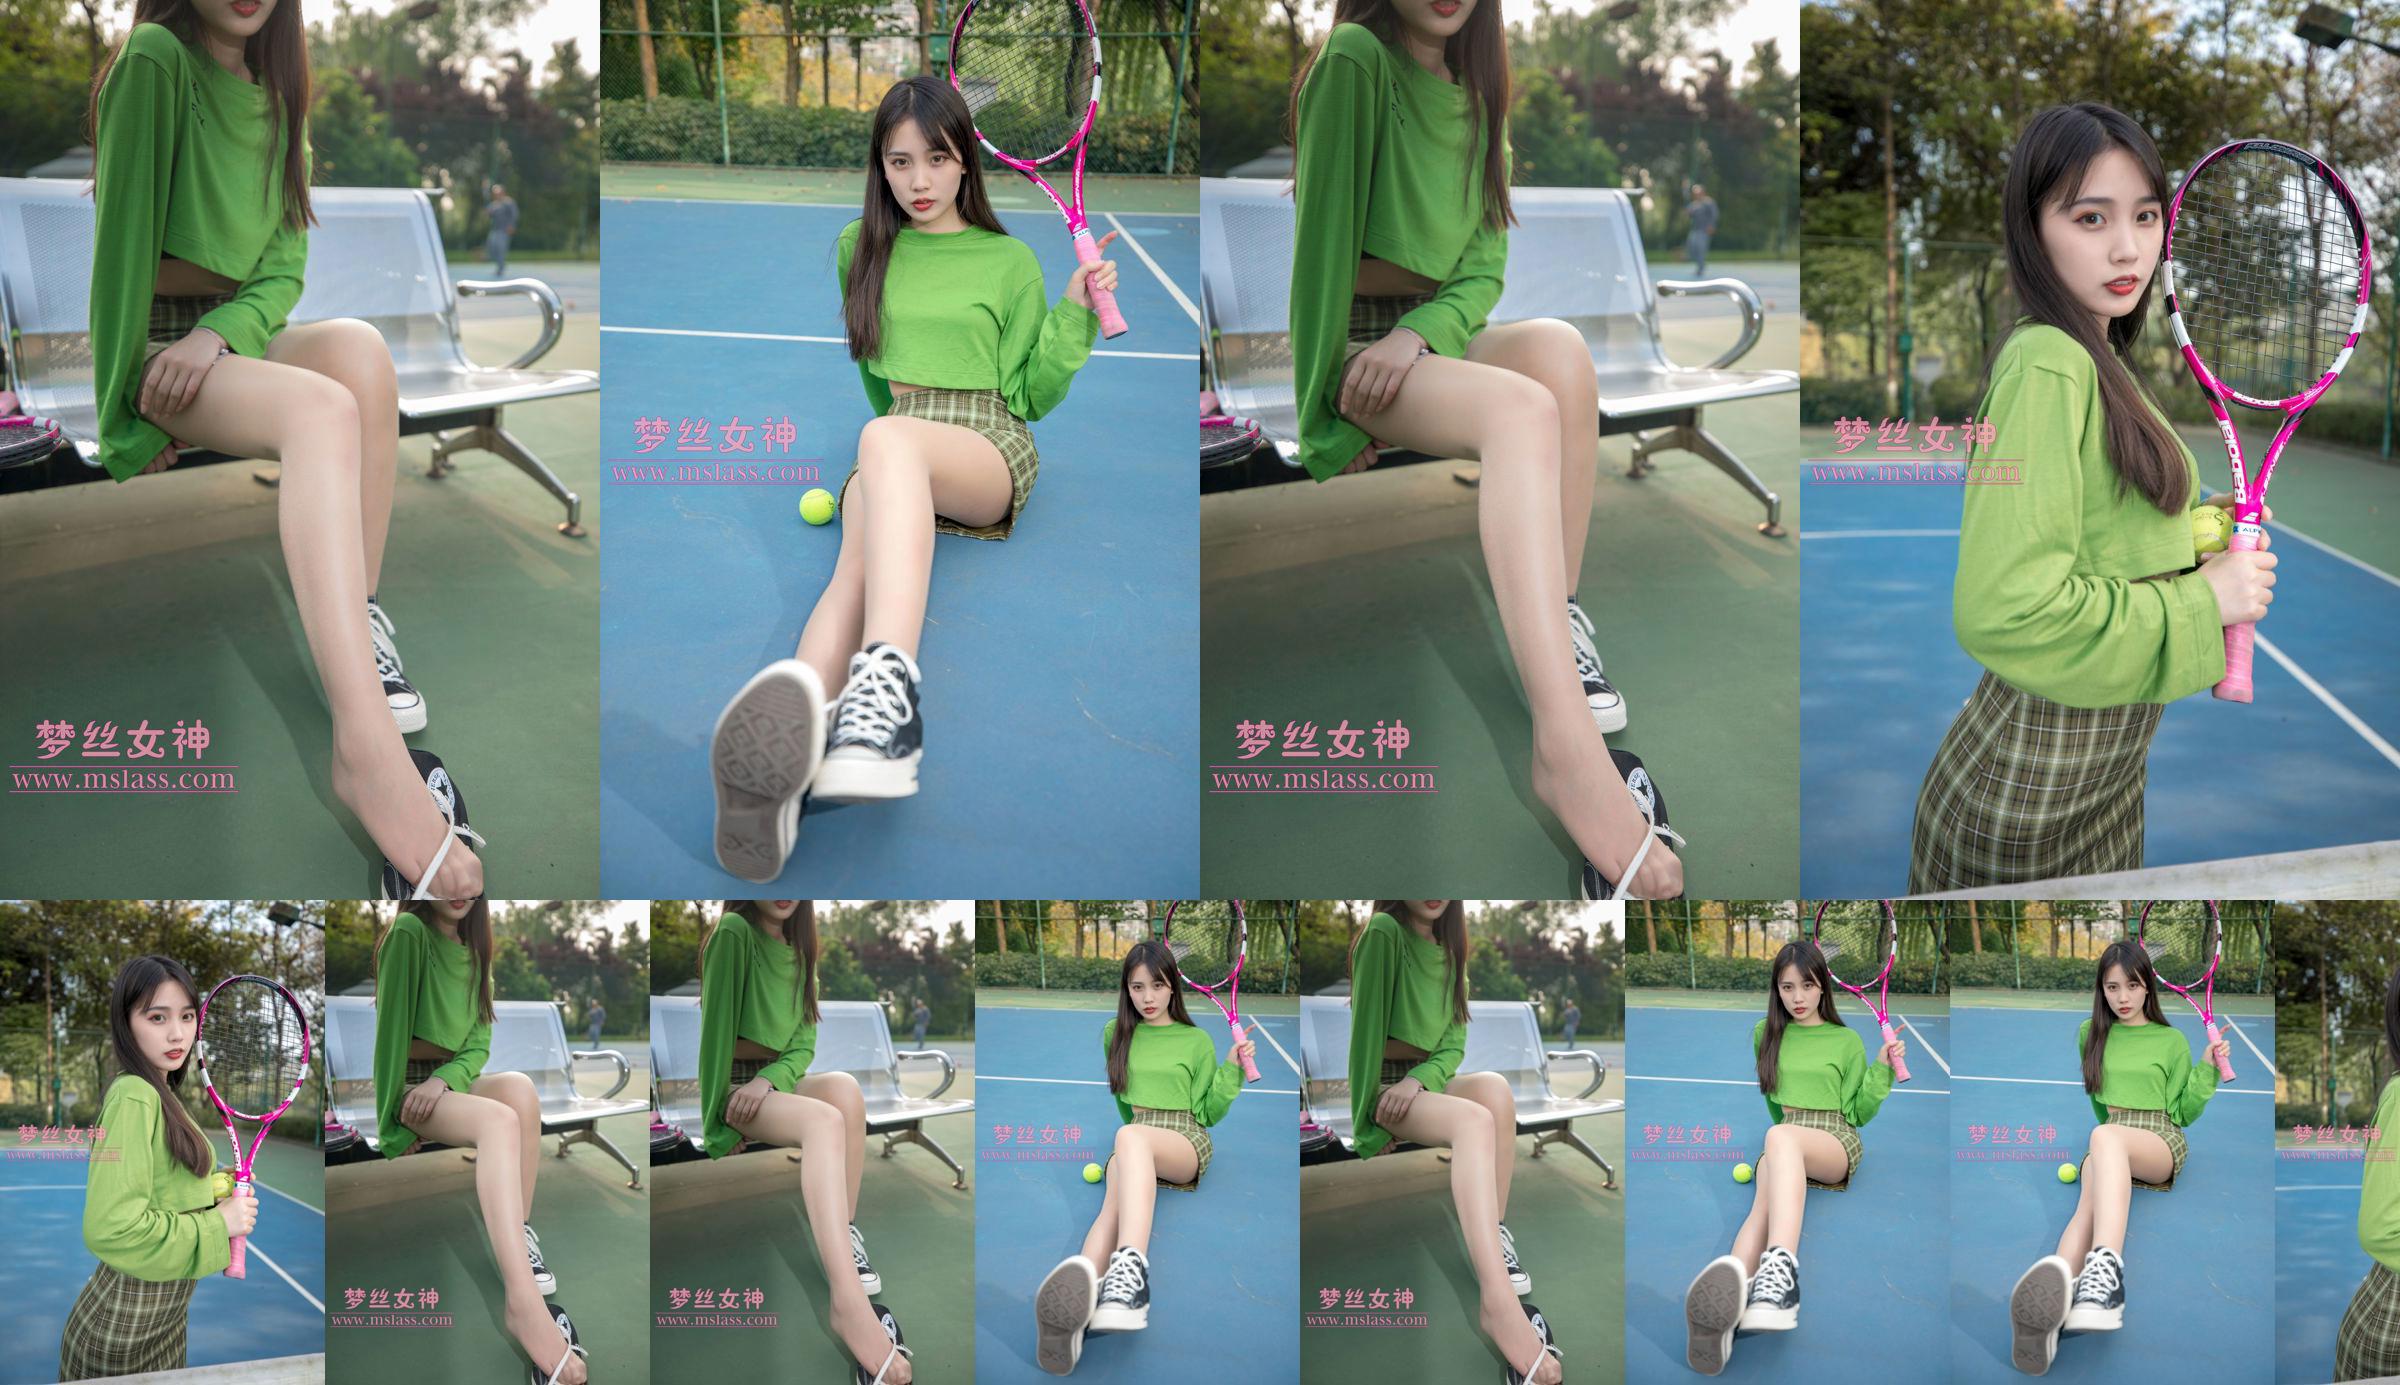 [꿈의 여신 MSLASS] Xiang Xuan 테니스 소녀 No.664cfb 페이지 1